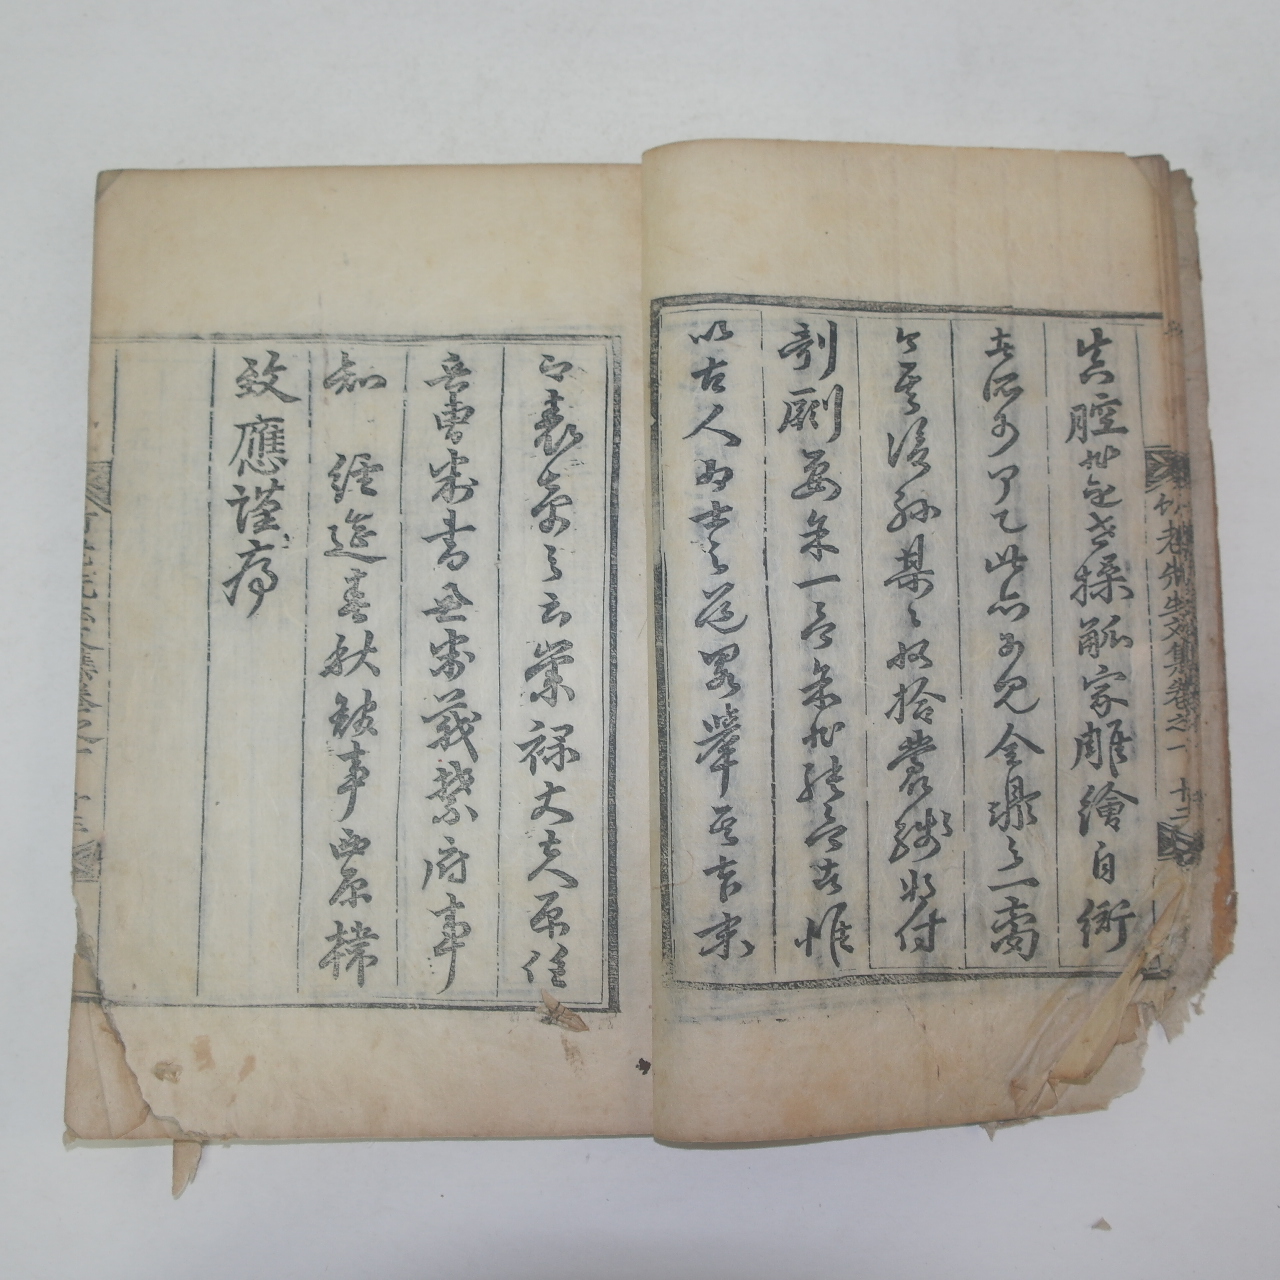 1834년 목판본 평산신씨 신활(申活) 죽로선생문집(竹老先生文集)권1,2  1책